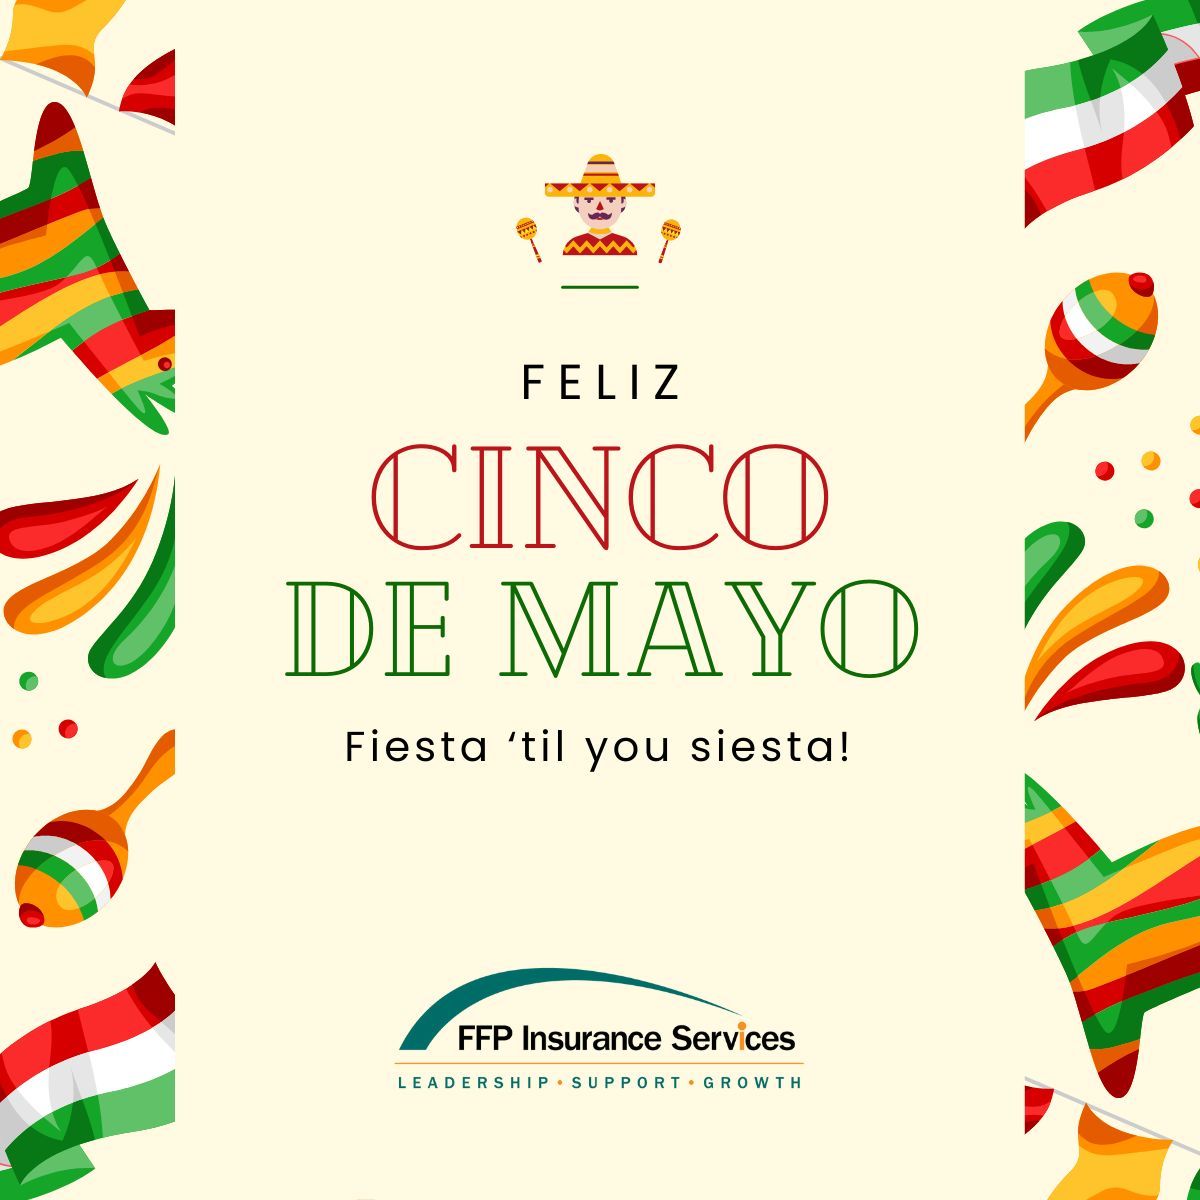 Happy Cinco de Mayo!  🇲🇽 🪅 🌮 

#FFP #LifeInsurance #InsuranceAgency #LifeAgent #CincoDeMayo